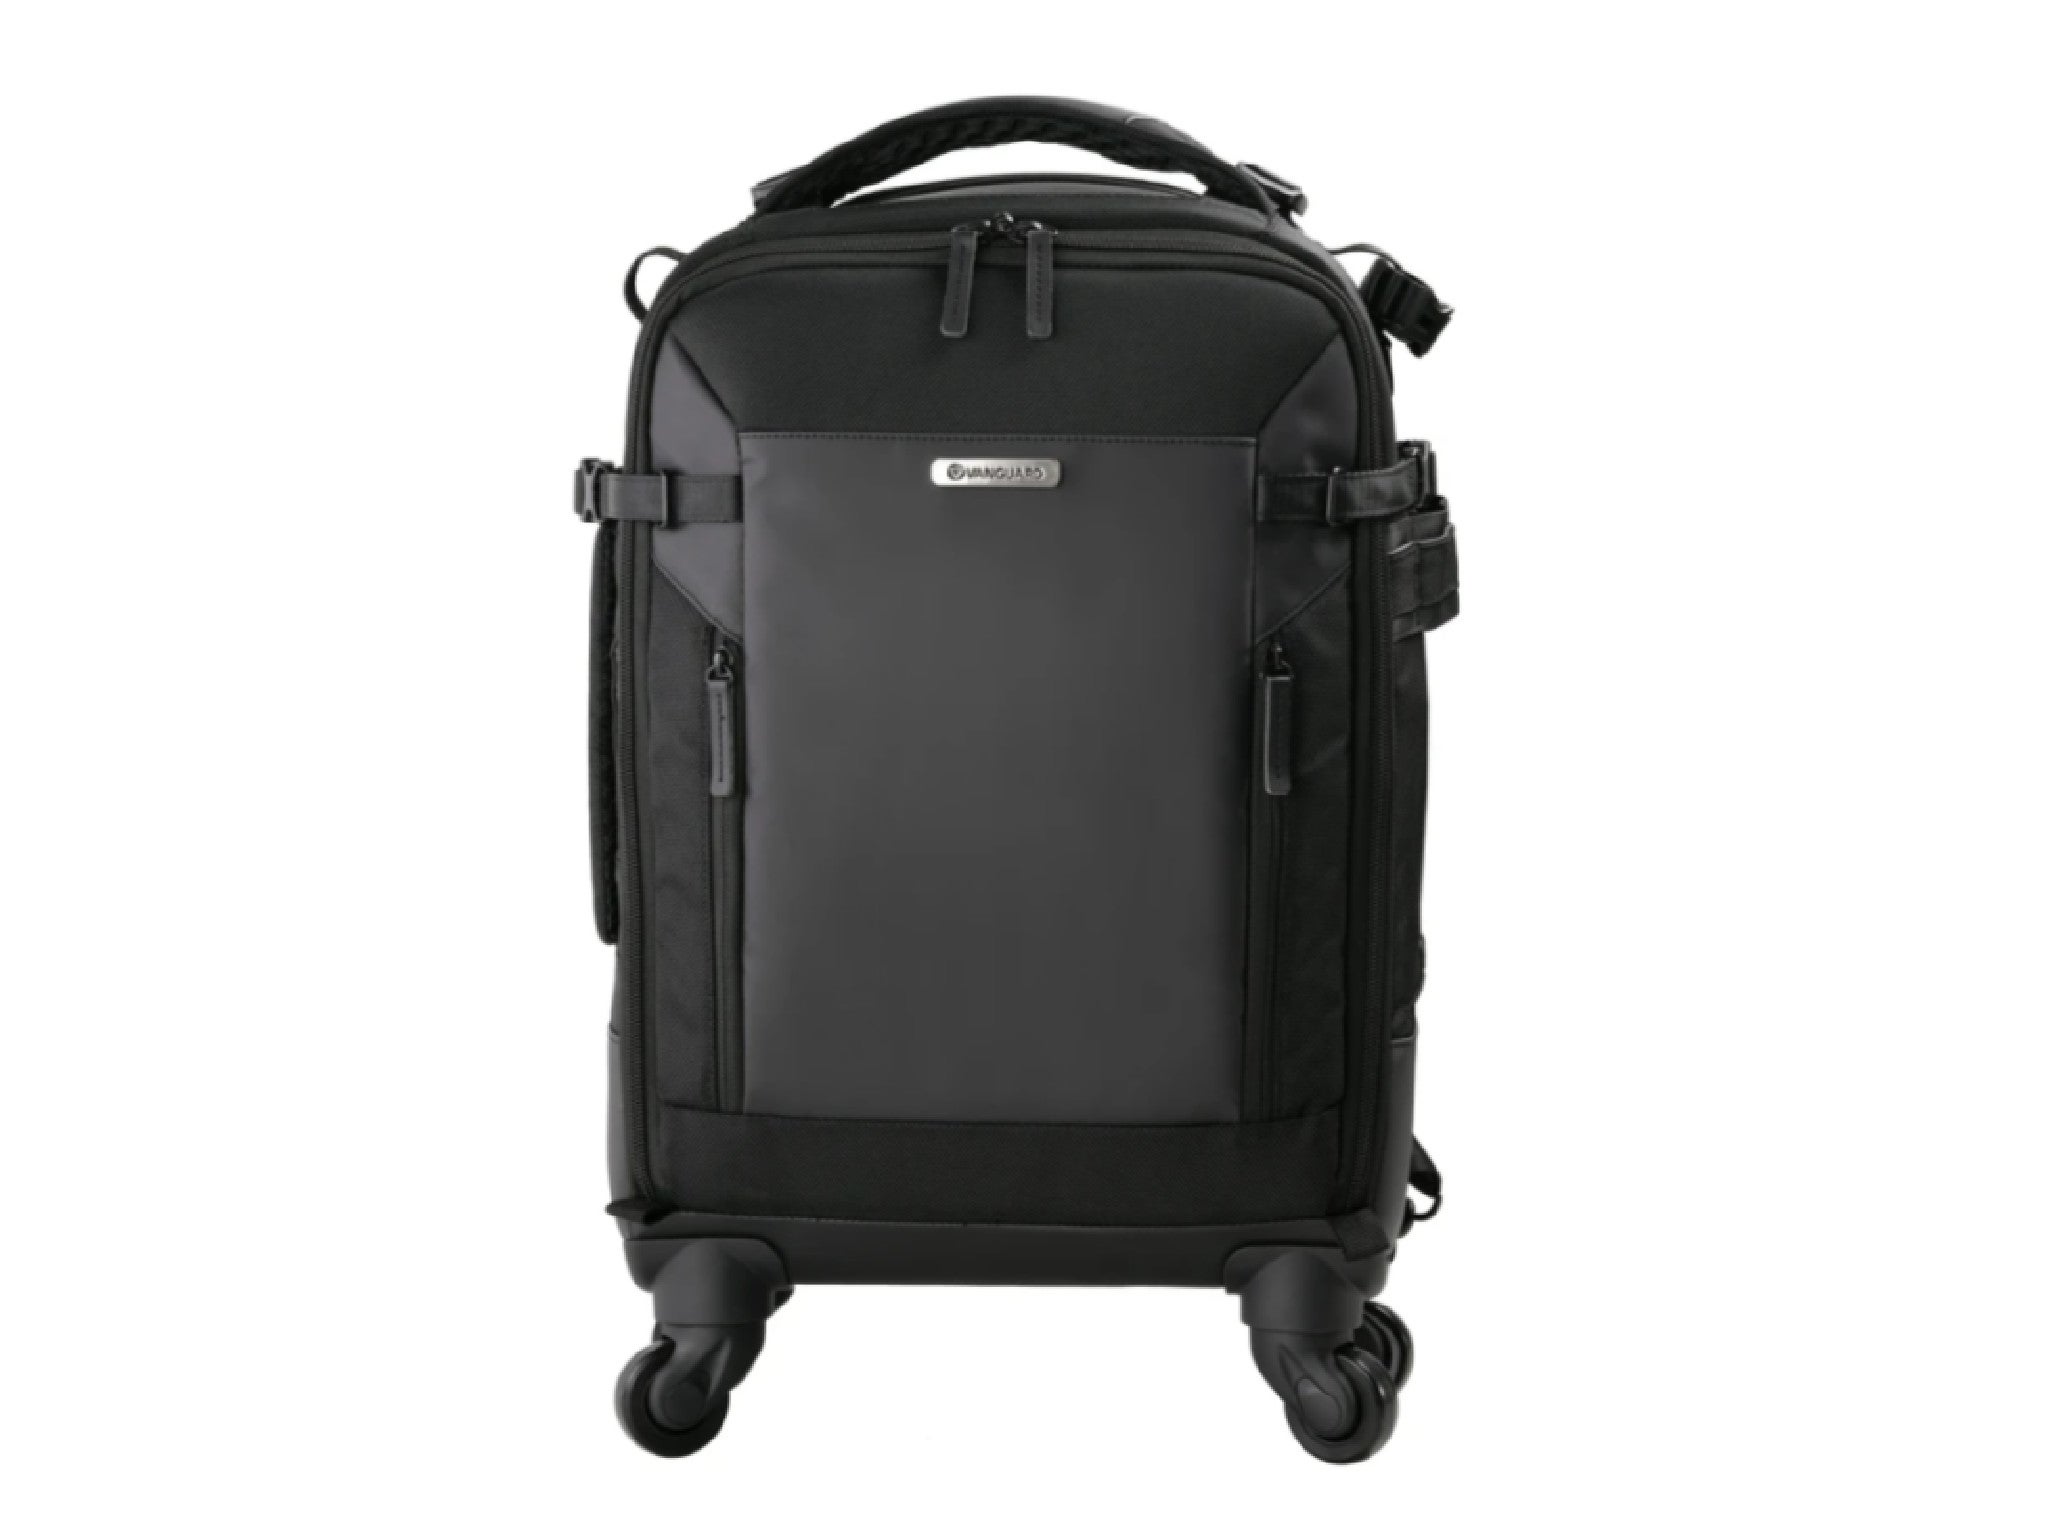 Best camera bags 2021: Backpack, hard case, roller bag